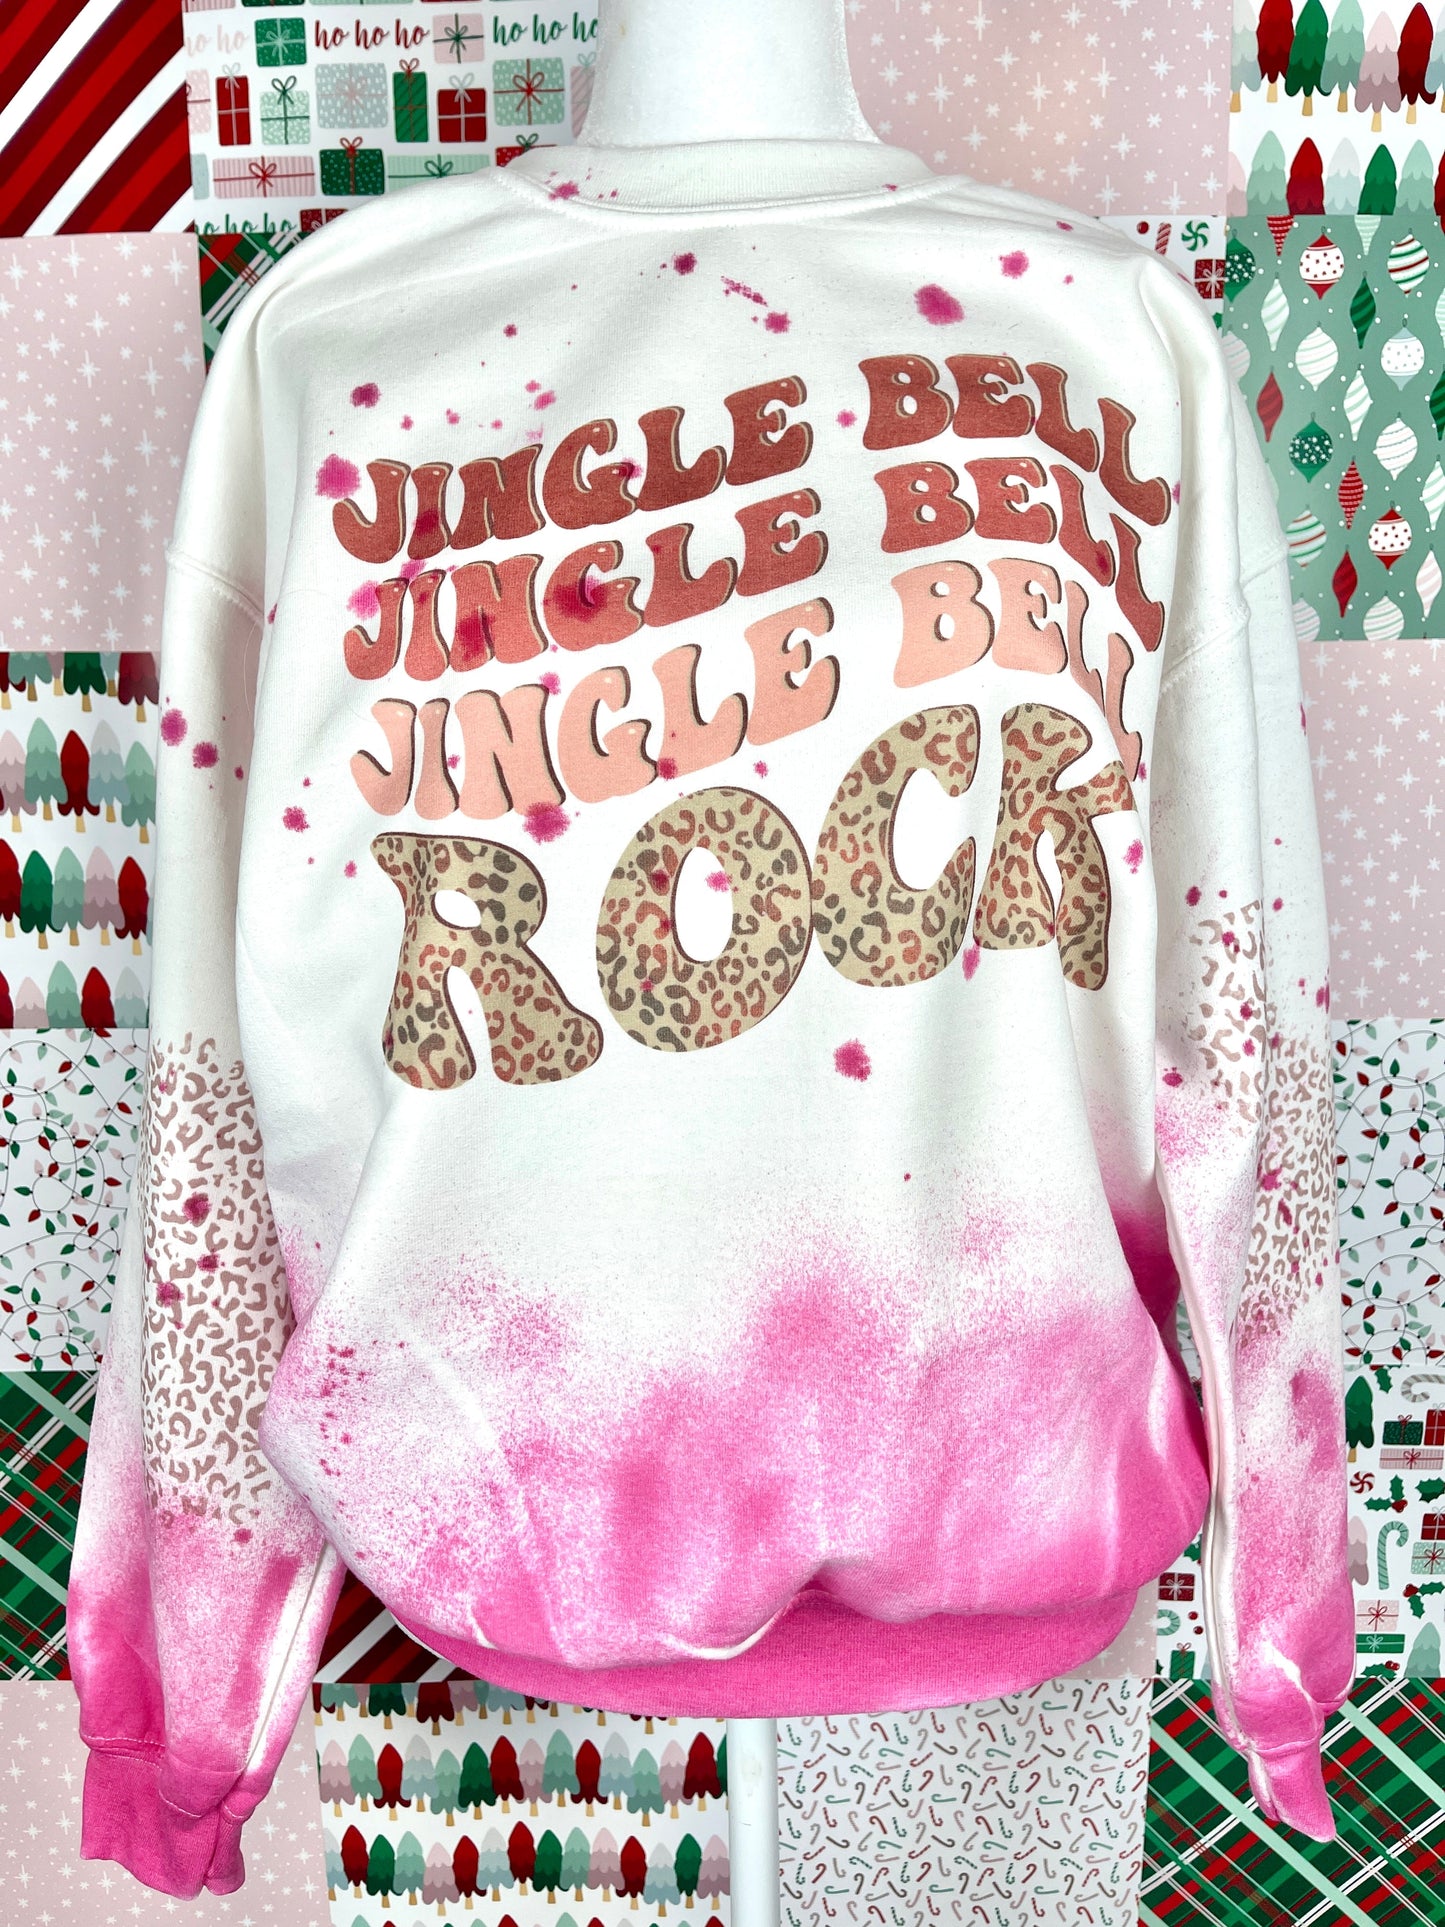 Jingle B E L L rock